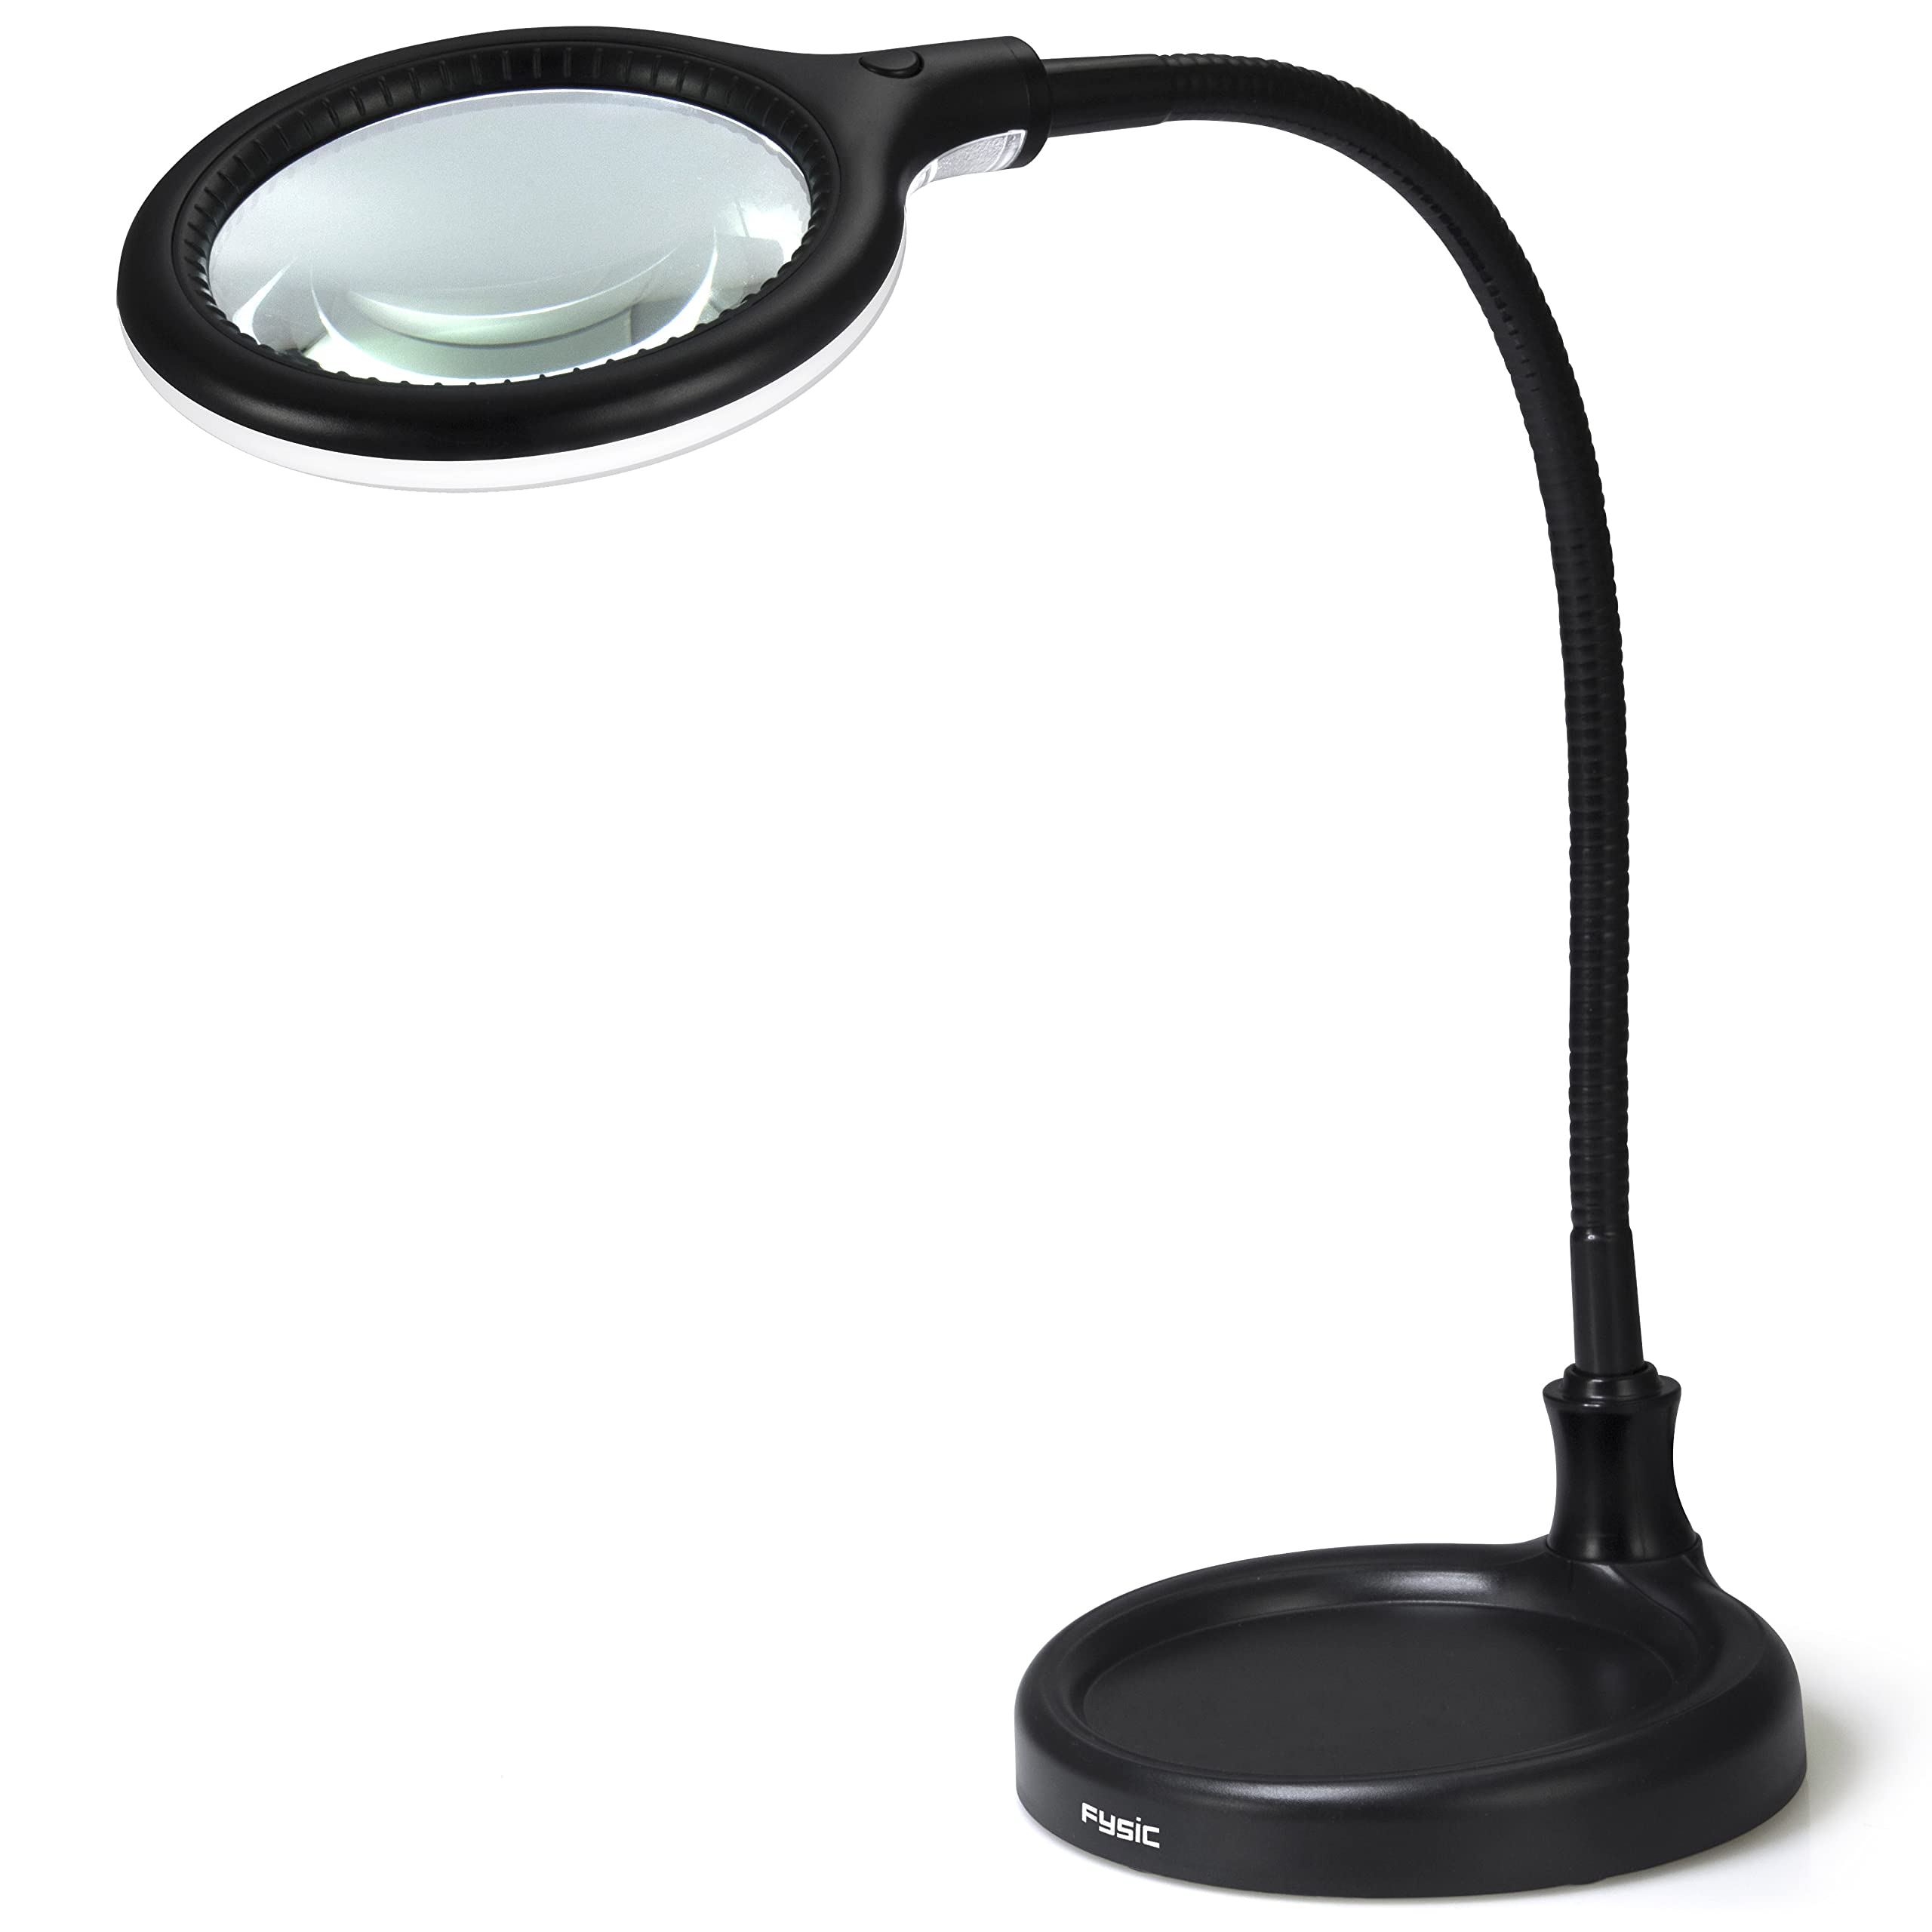 Fysic FL-25LED - Lupenlampe - Tischlupe mit Licht LED - Tischlampe mit Lupe - für Handwerkliche Arbeiten Lesen,Nähen,Hobbys,Arbeit,Sehschwäche - Schwarz